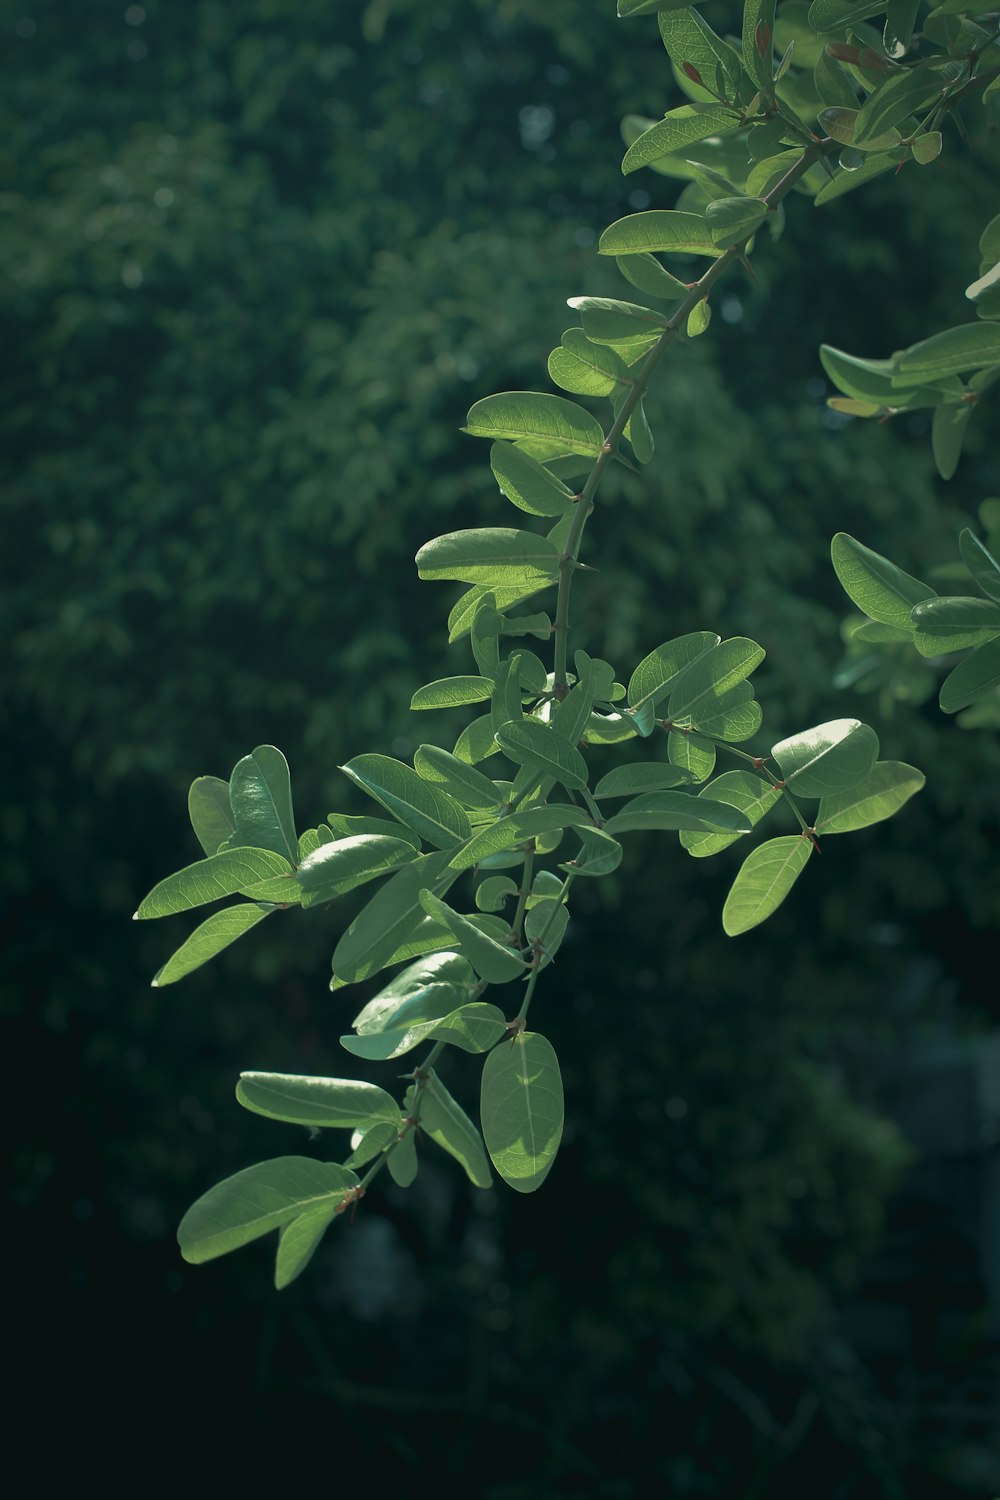 틸트 시프트 렌즈의 녹색 잎